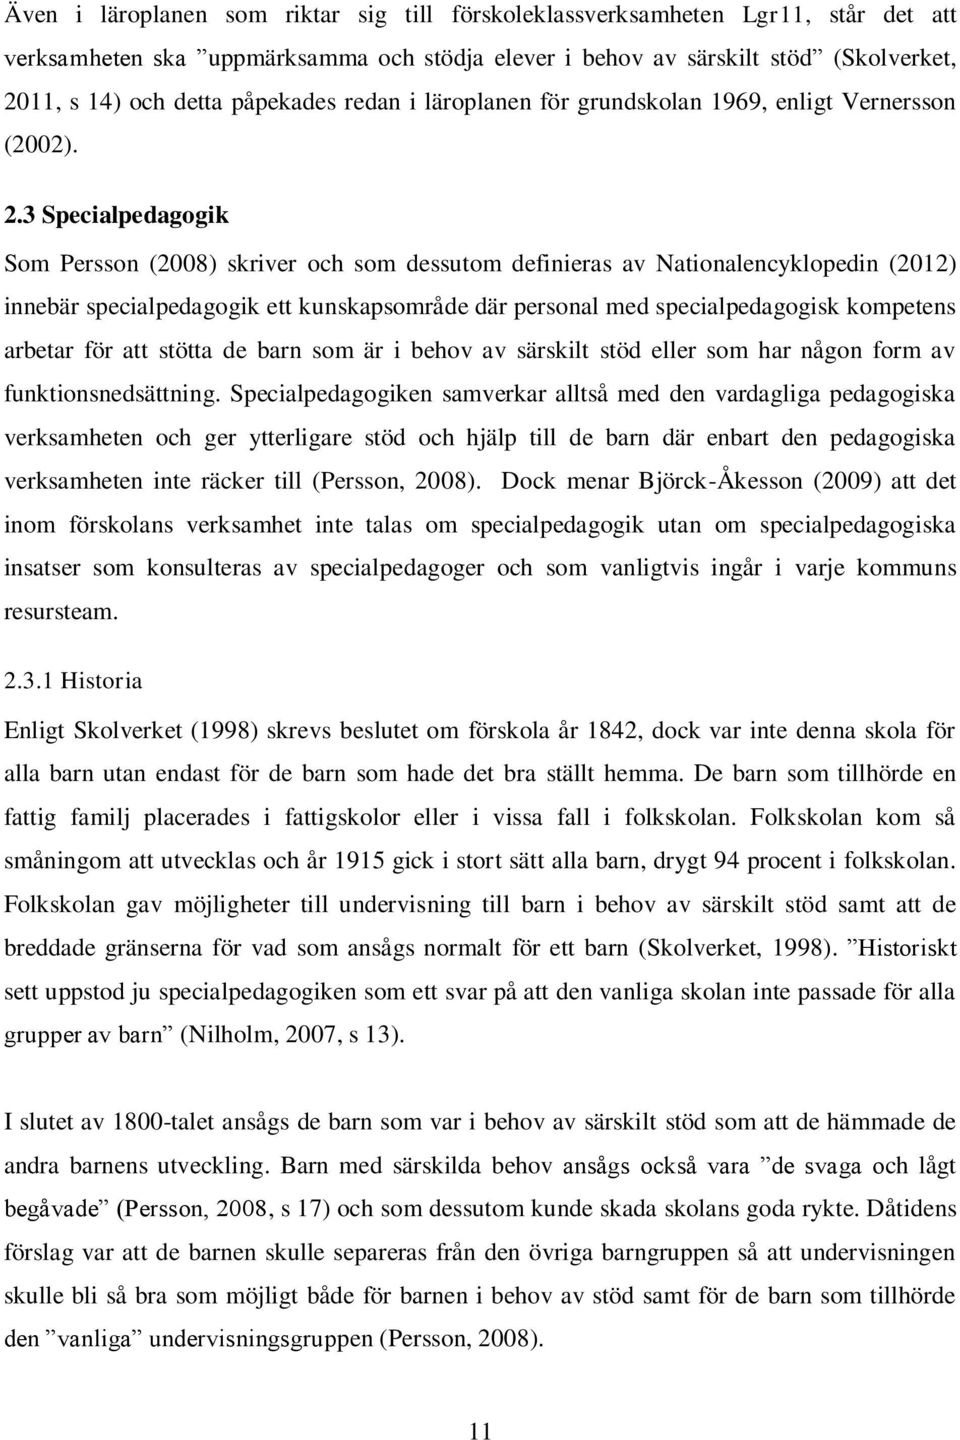 3 Specialpedagogik Som Persson (2008) skriver och som dessutom definieras av Nationalencyklopedin (2012) innebär specialpedagogik ett kunskapsområde där personal med specialpedagogisk kompetens